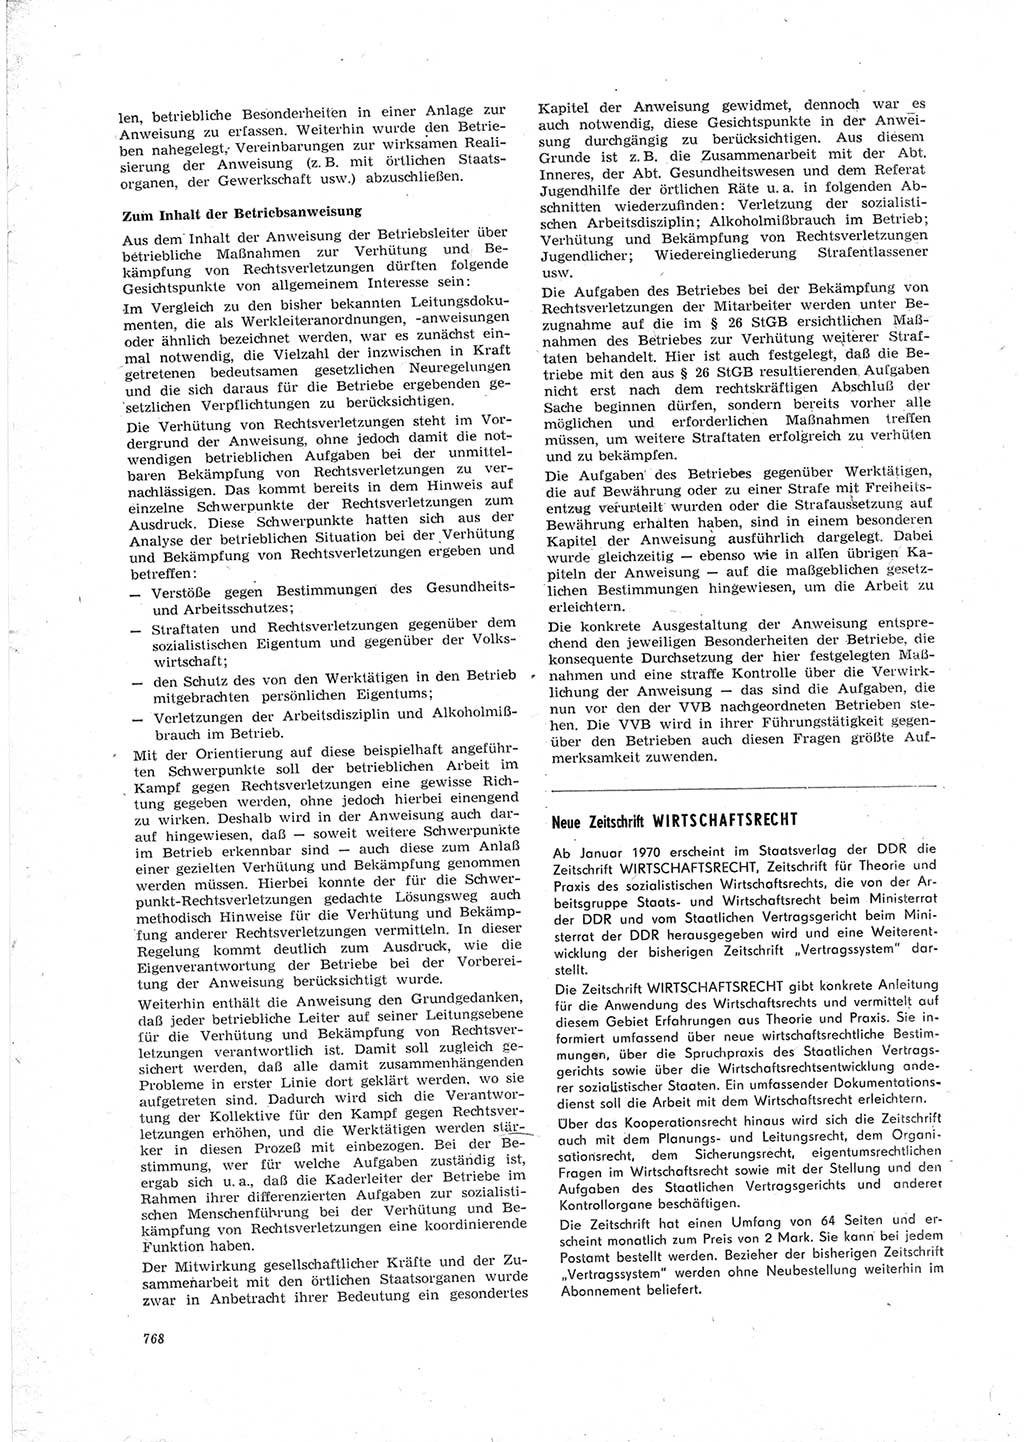 Neue Justiz (NJ), Zeitschrift für Recht und Rechtswissenschaft [Deutsche Demokratische Republik (DDR)], 23. Jahrgang 1969, Seite 768 (NJ DDR 1969, S. 768)